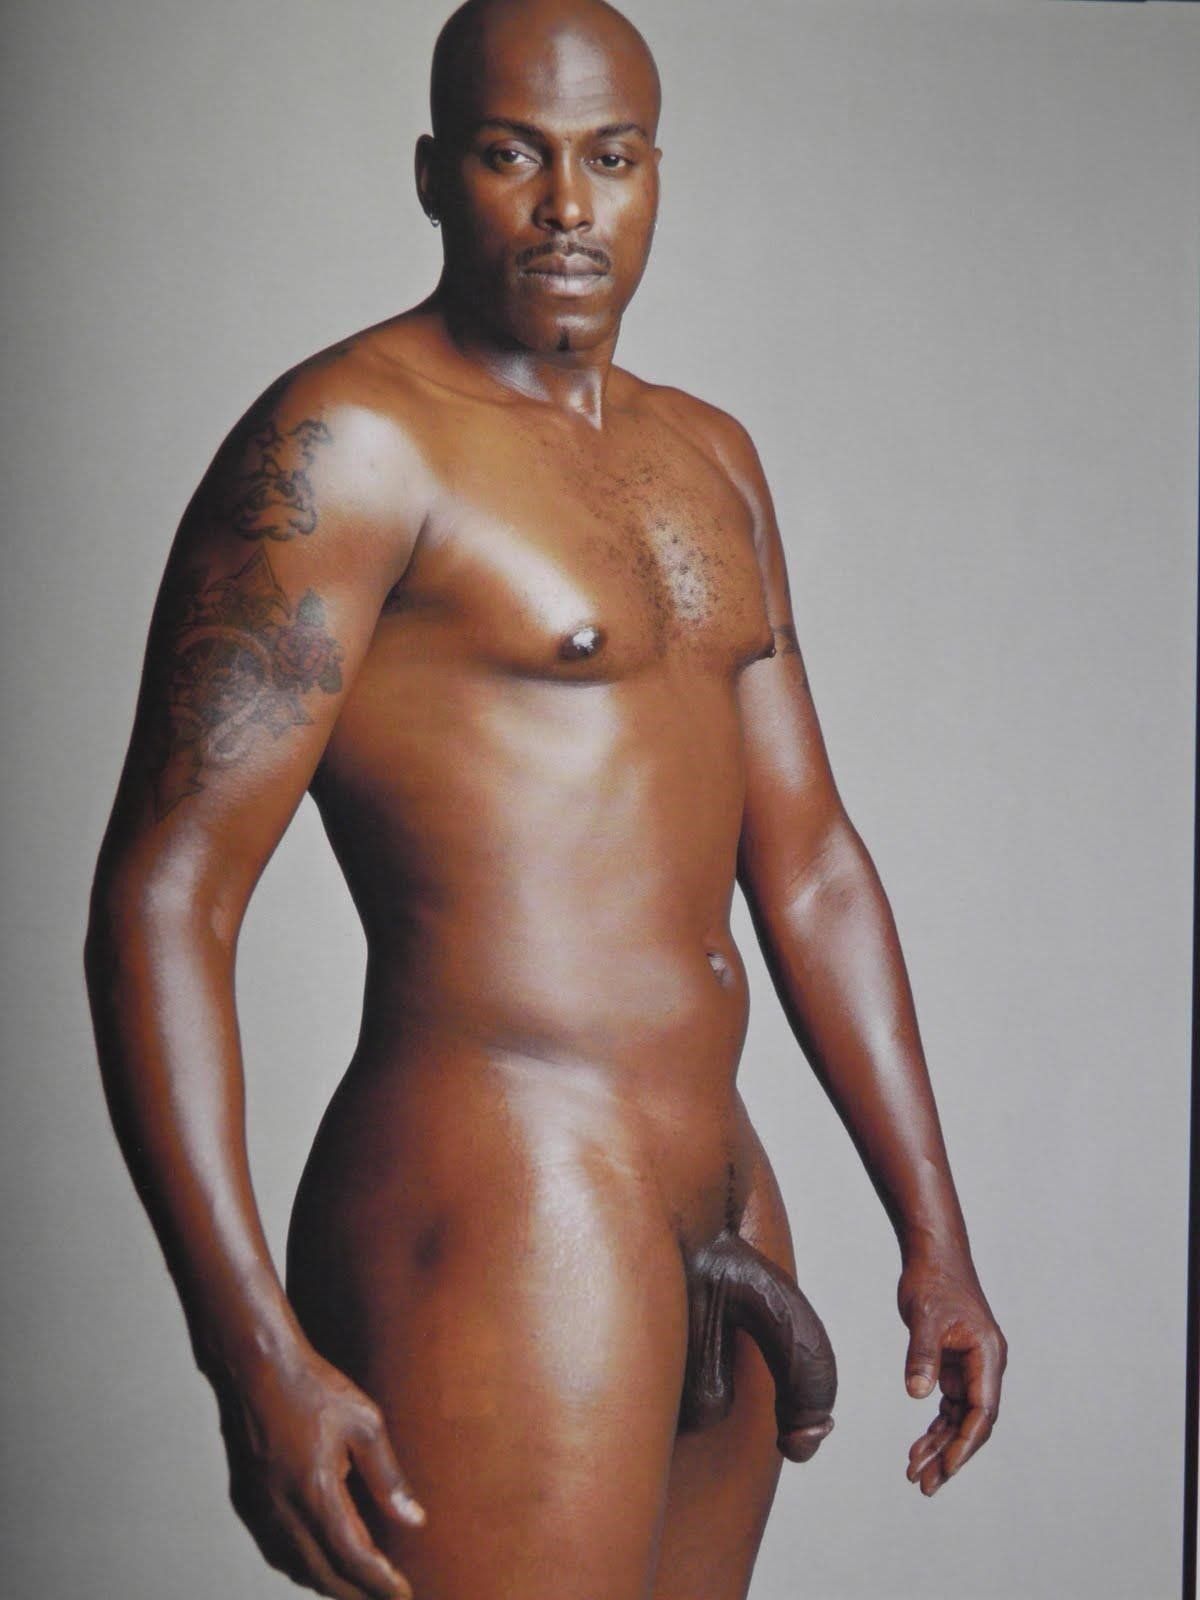 best black porn star man hd sex photo